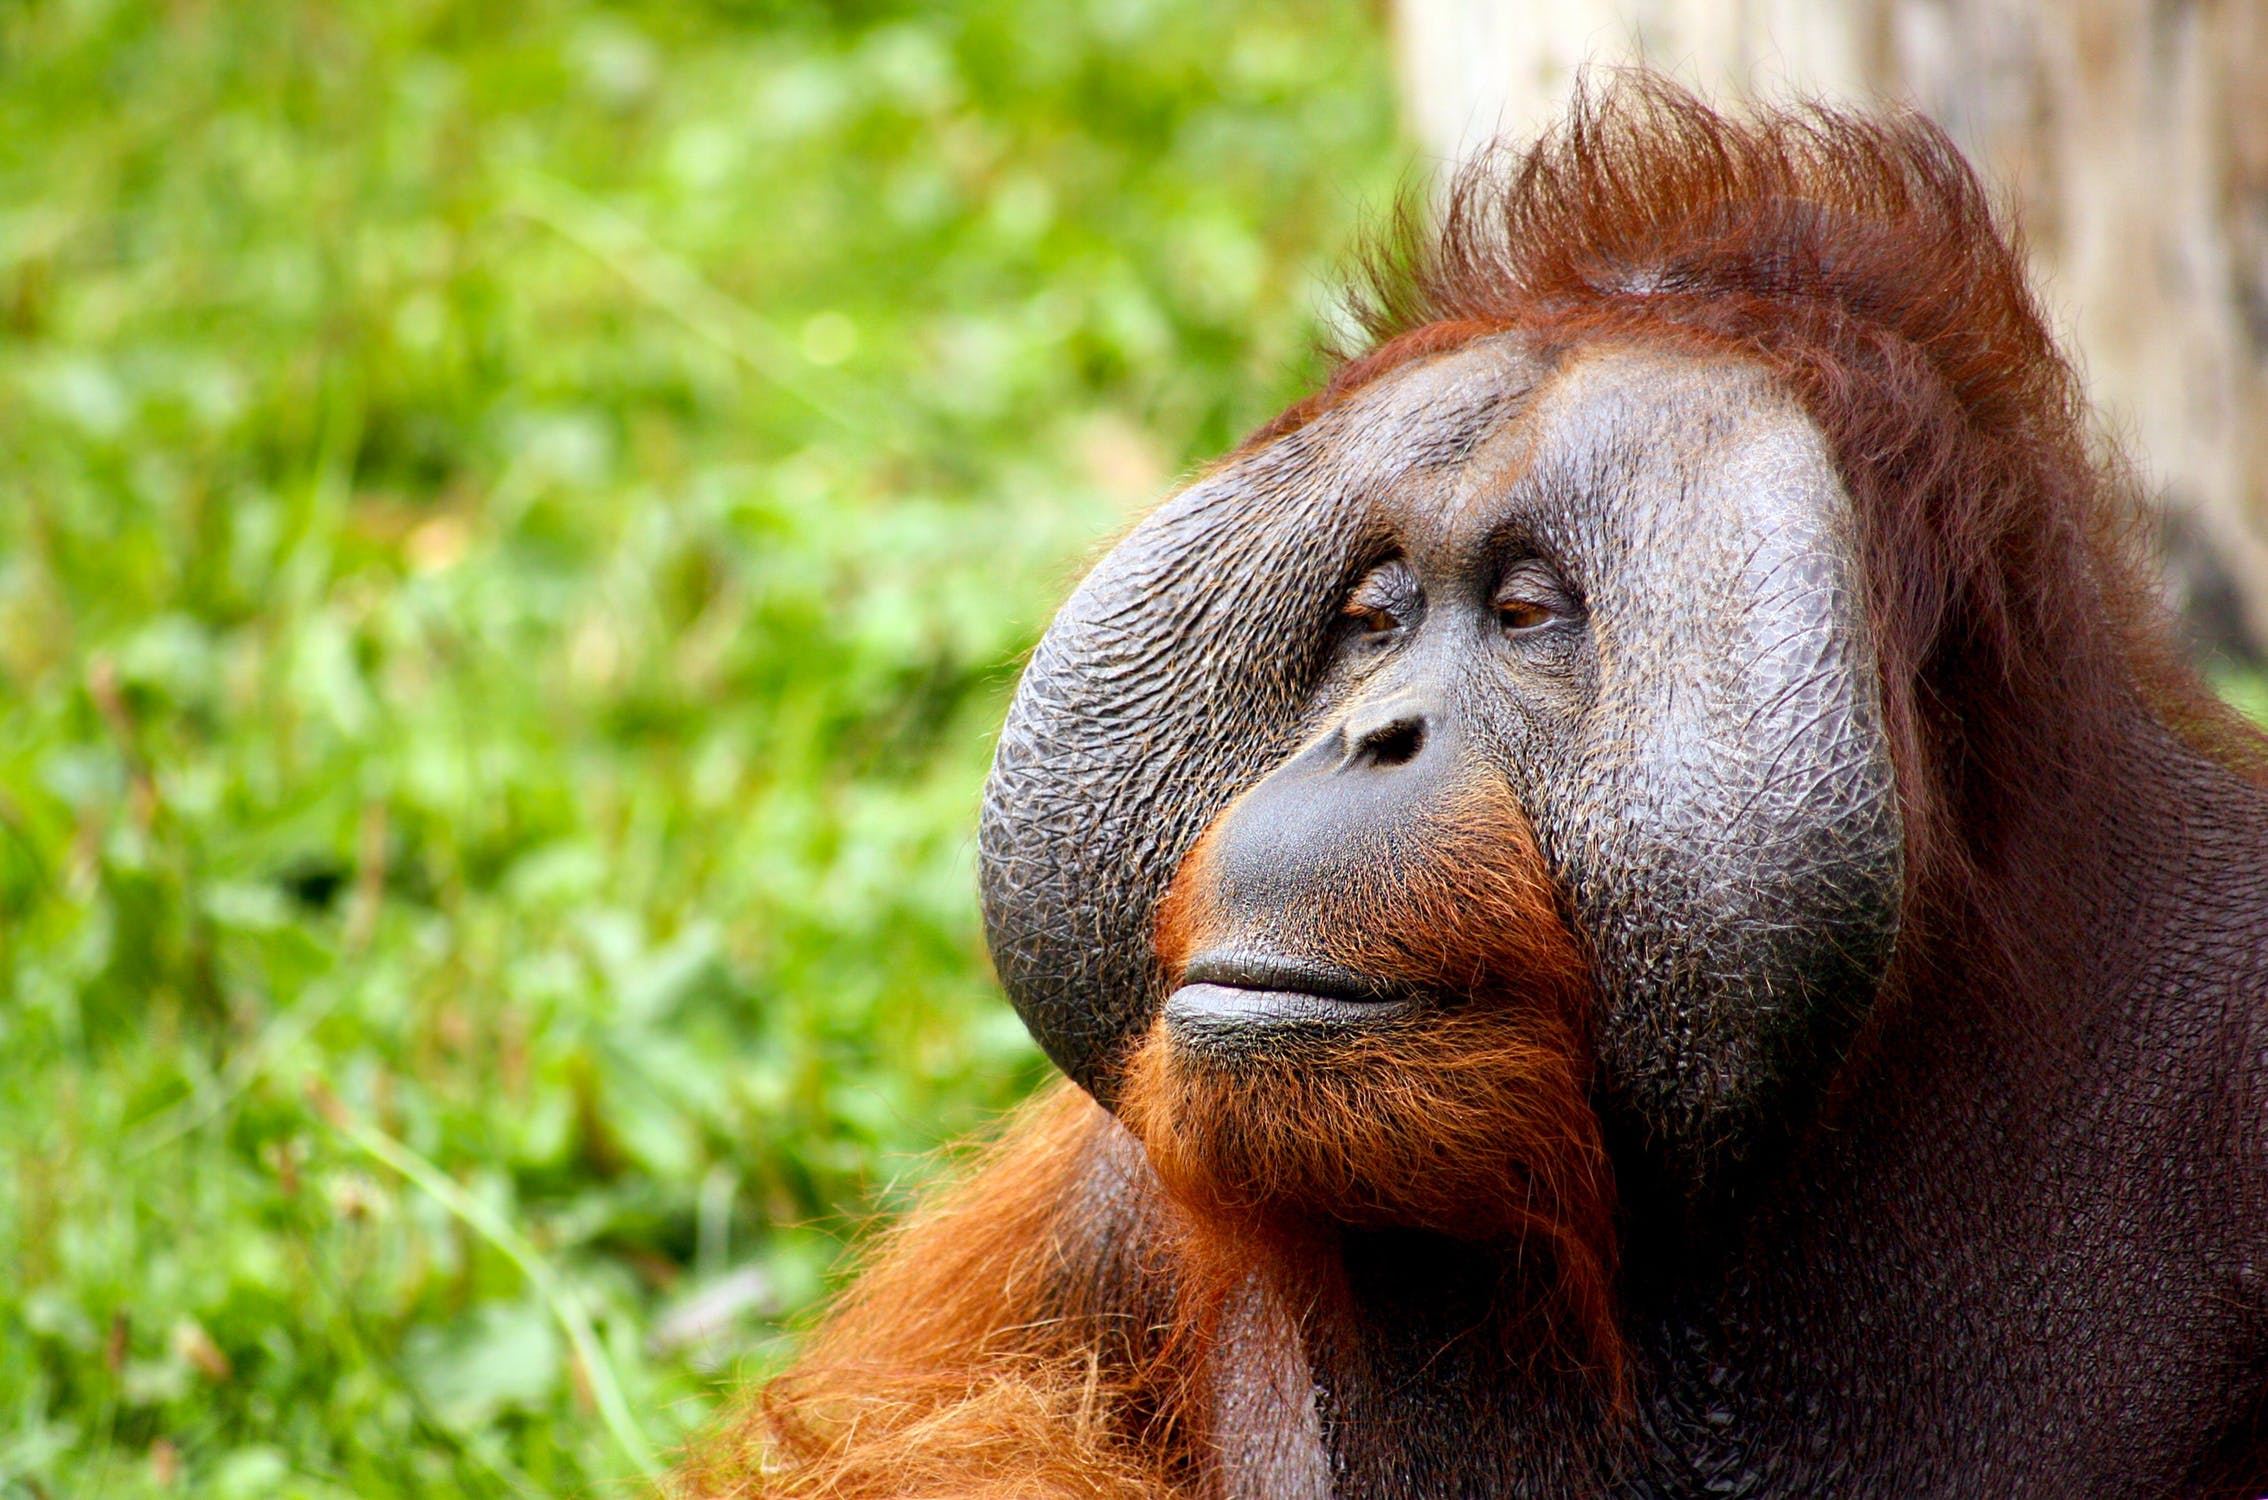 Orangutans are gentle animals.